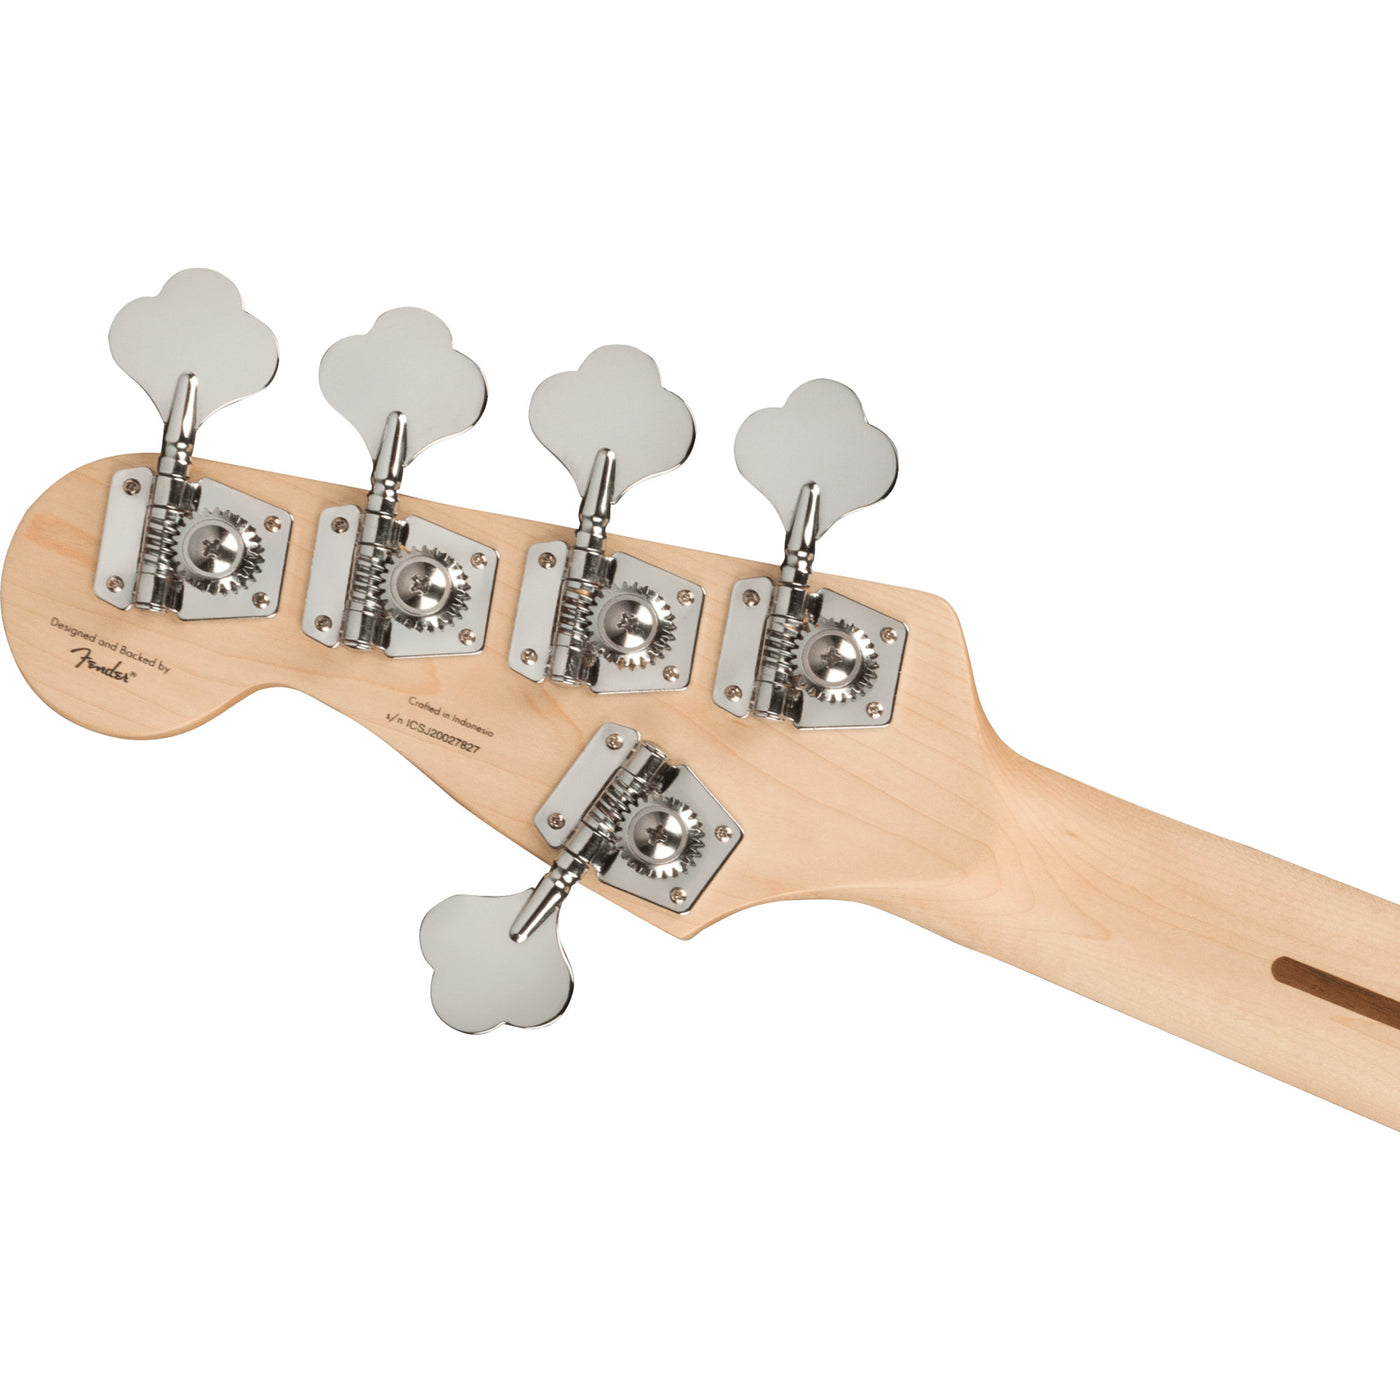 Fender Affinity Series Jazz Bass V, 3-Color Sunburst (0378651500)